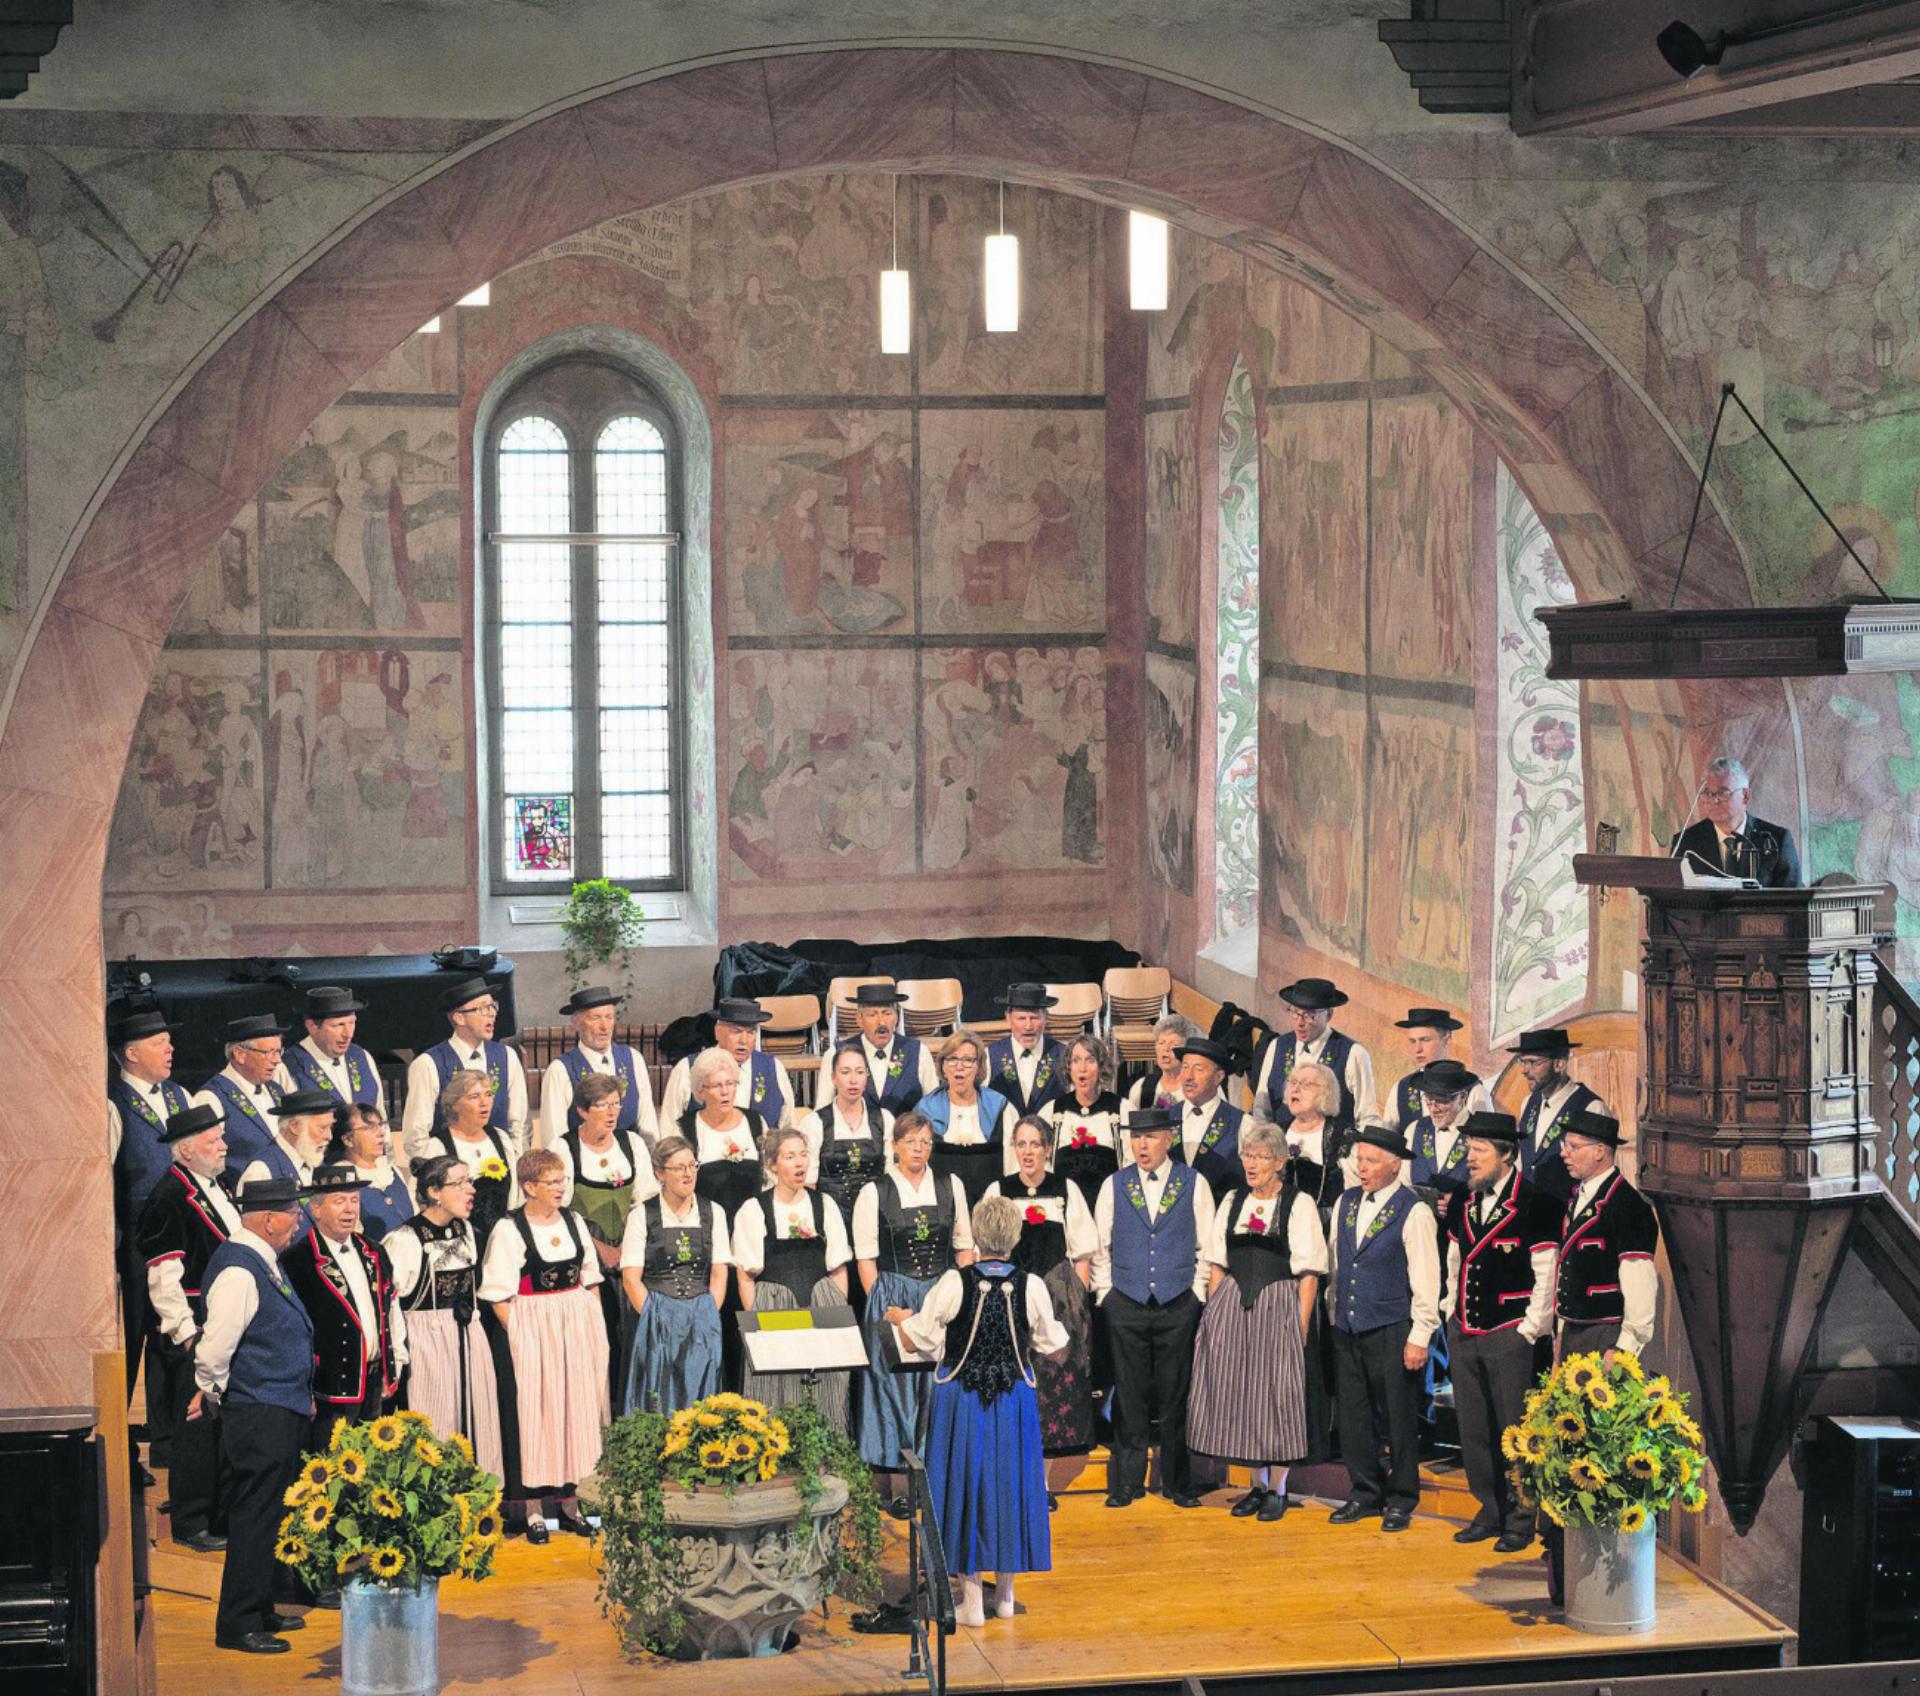 Die 40 Sängerinnen und Sänger begeisterten das Publikum in der Kirche Saanen. FOTOS: VRENI MÜLLENER